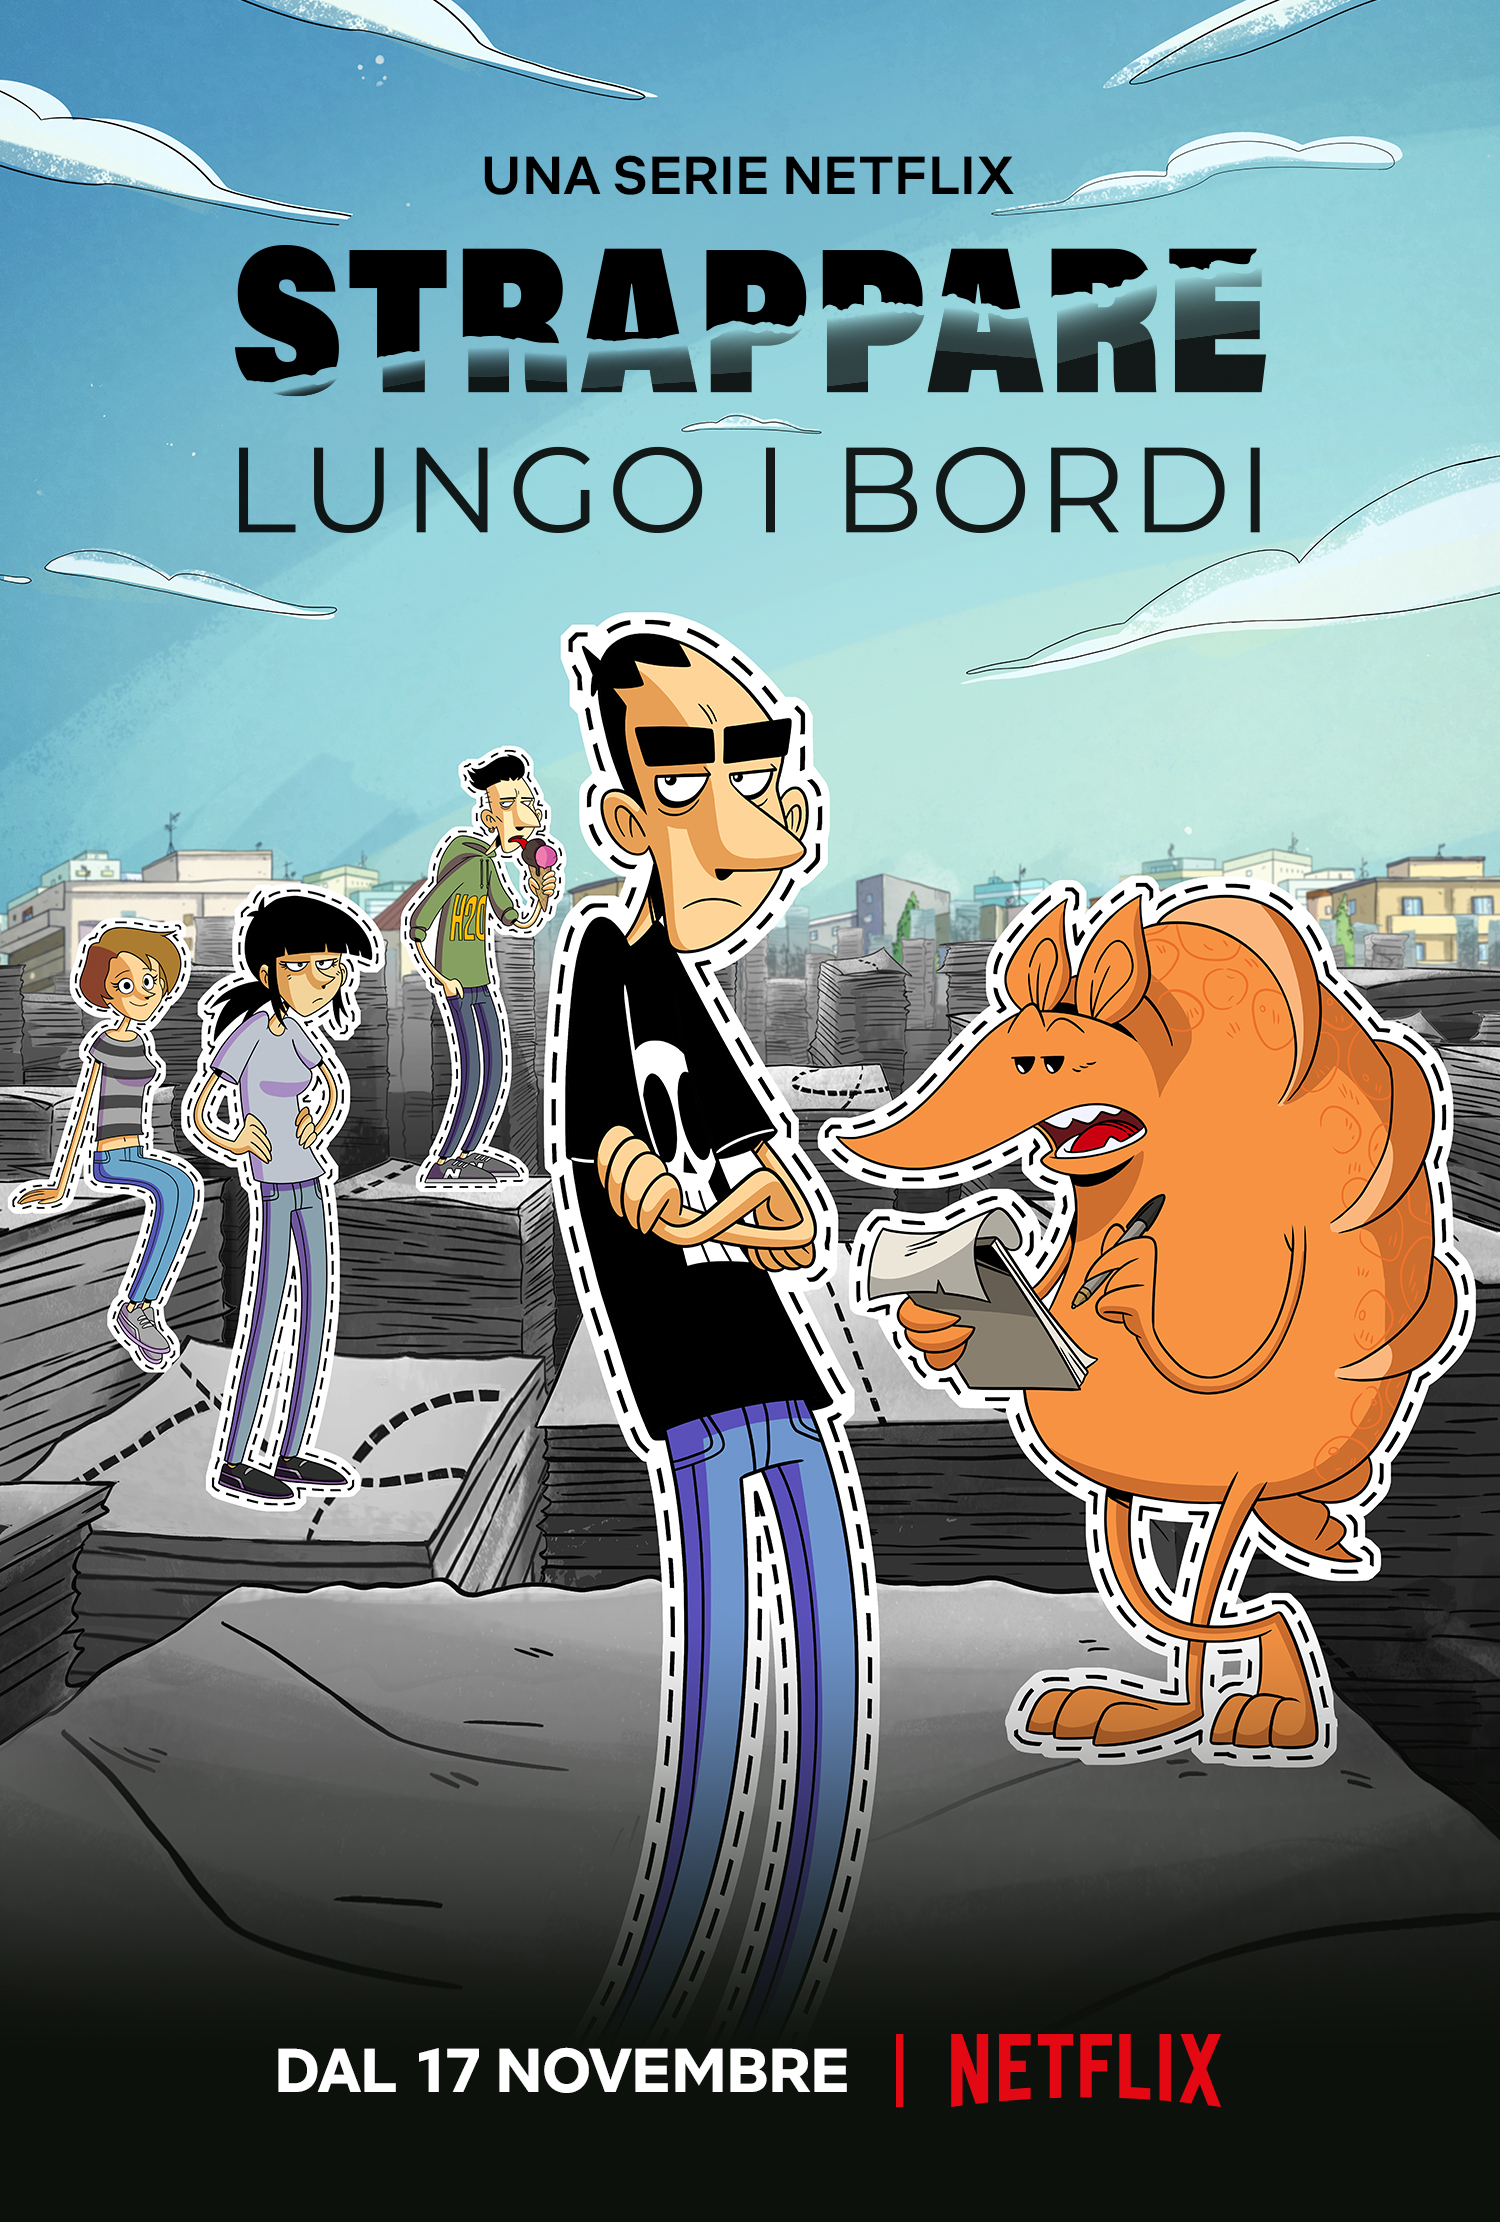 il poster ufficiale della serie - nerdface